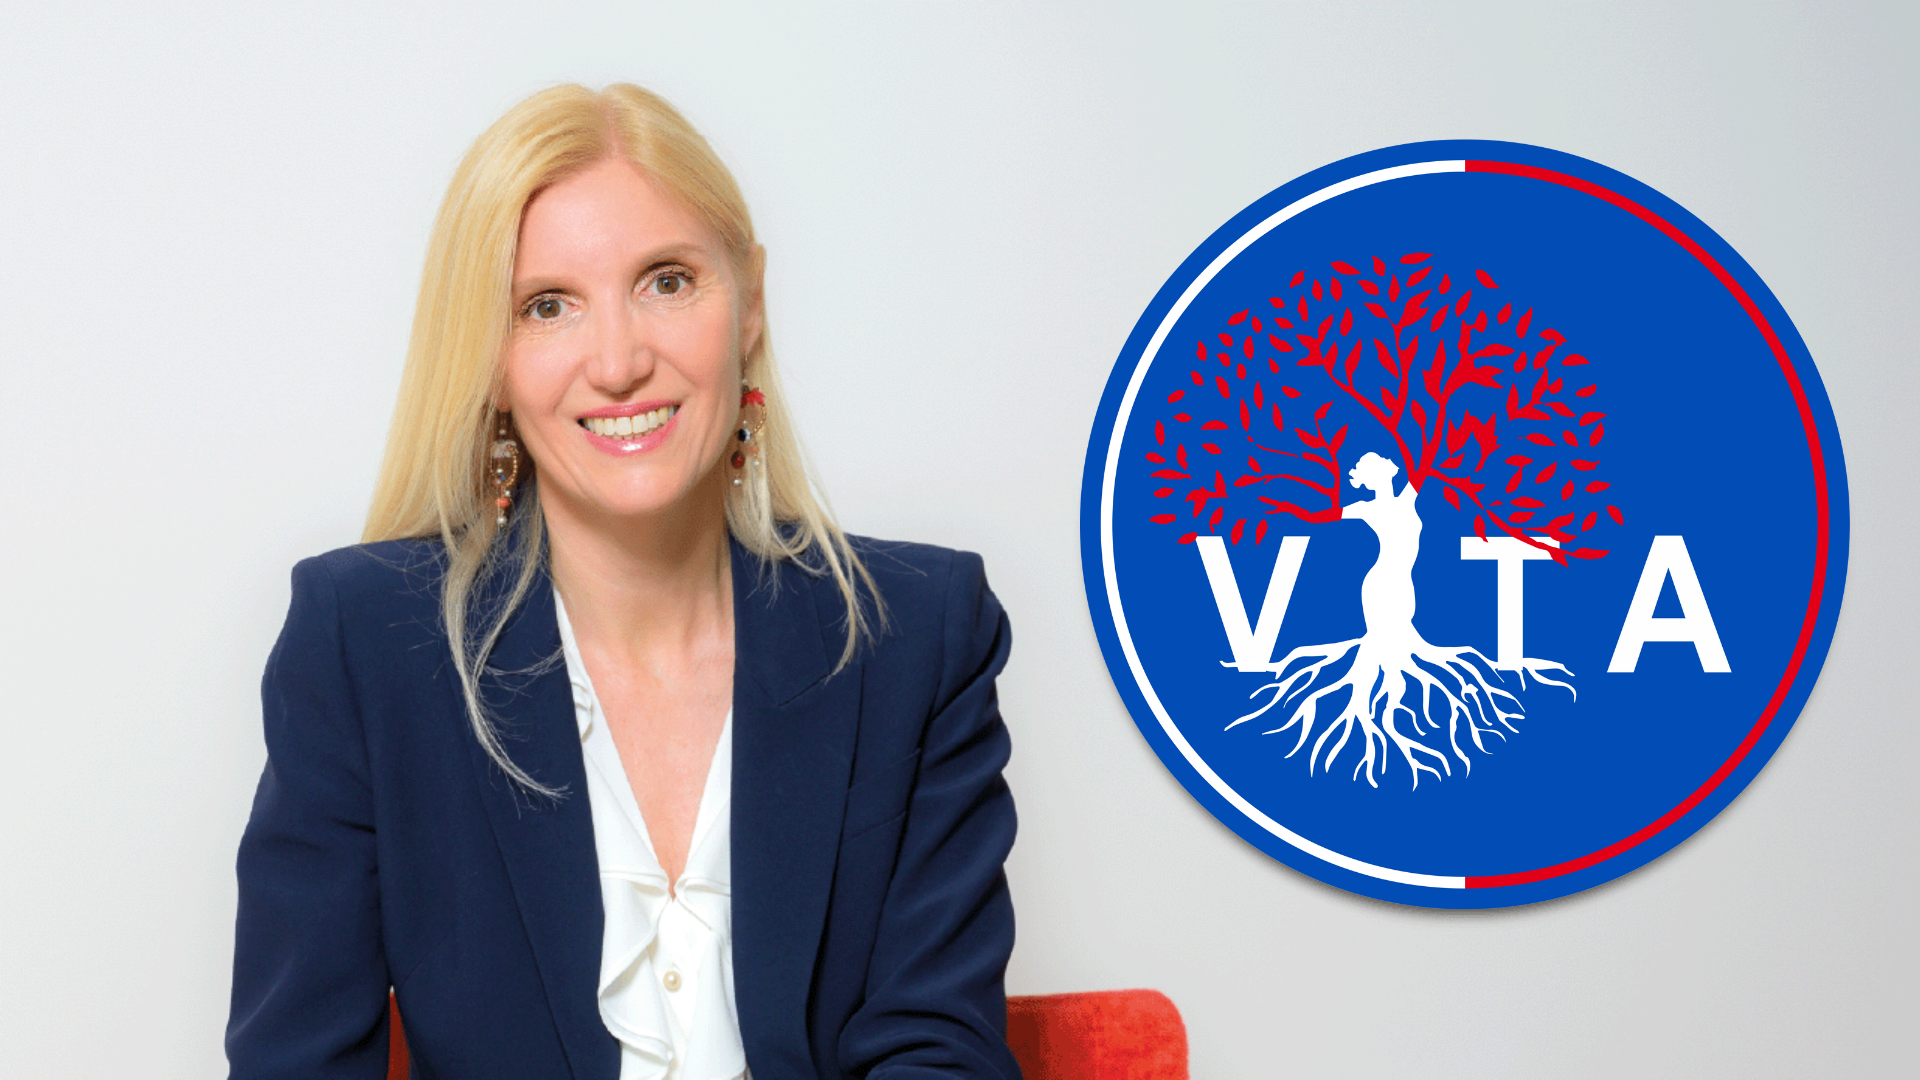 VITA, Renate Holzeisen Landeshauptfrau-Kandidatin für die Autonome Provinz Bozen